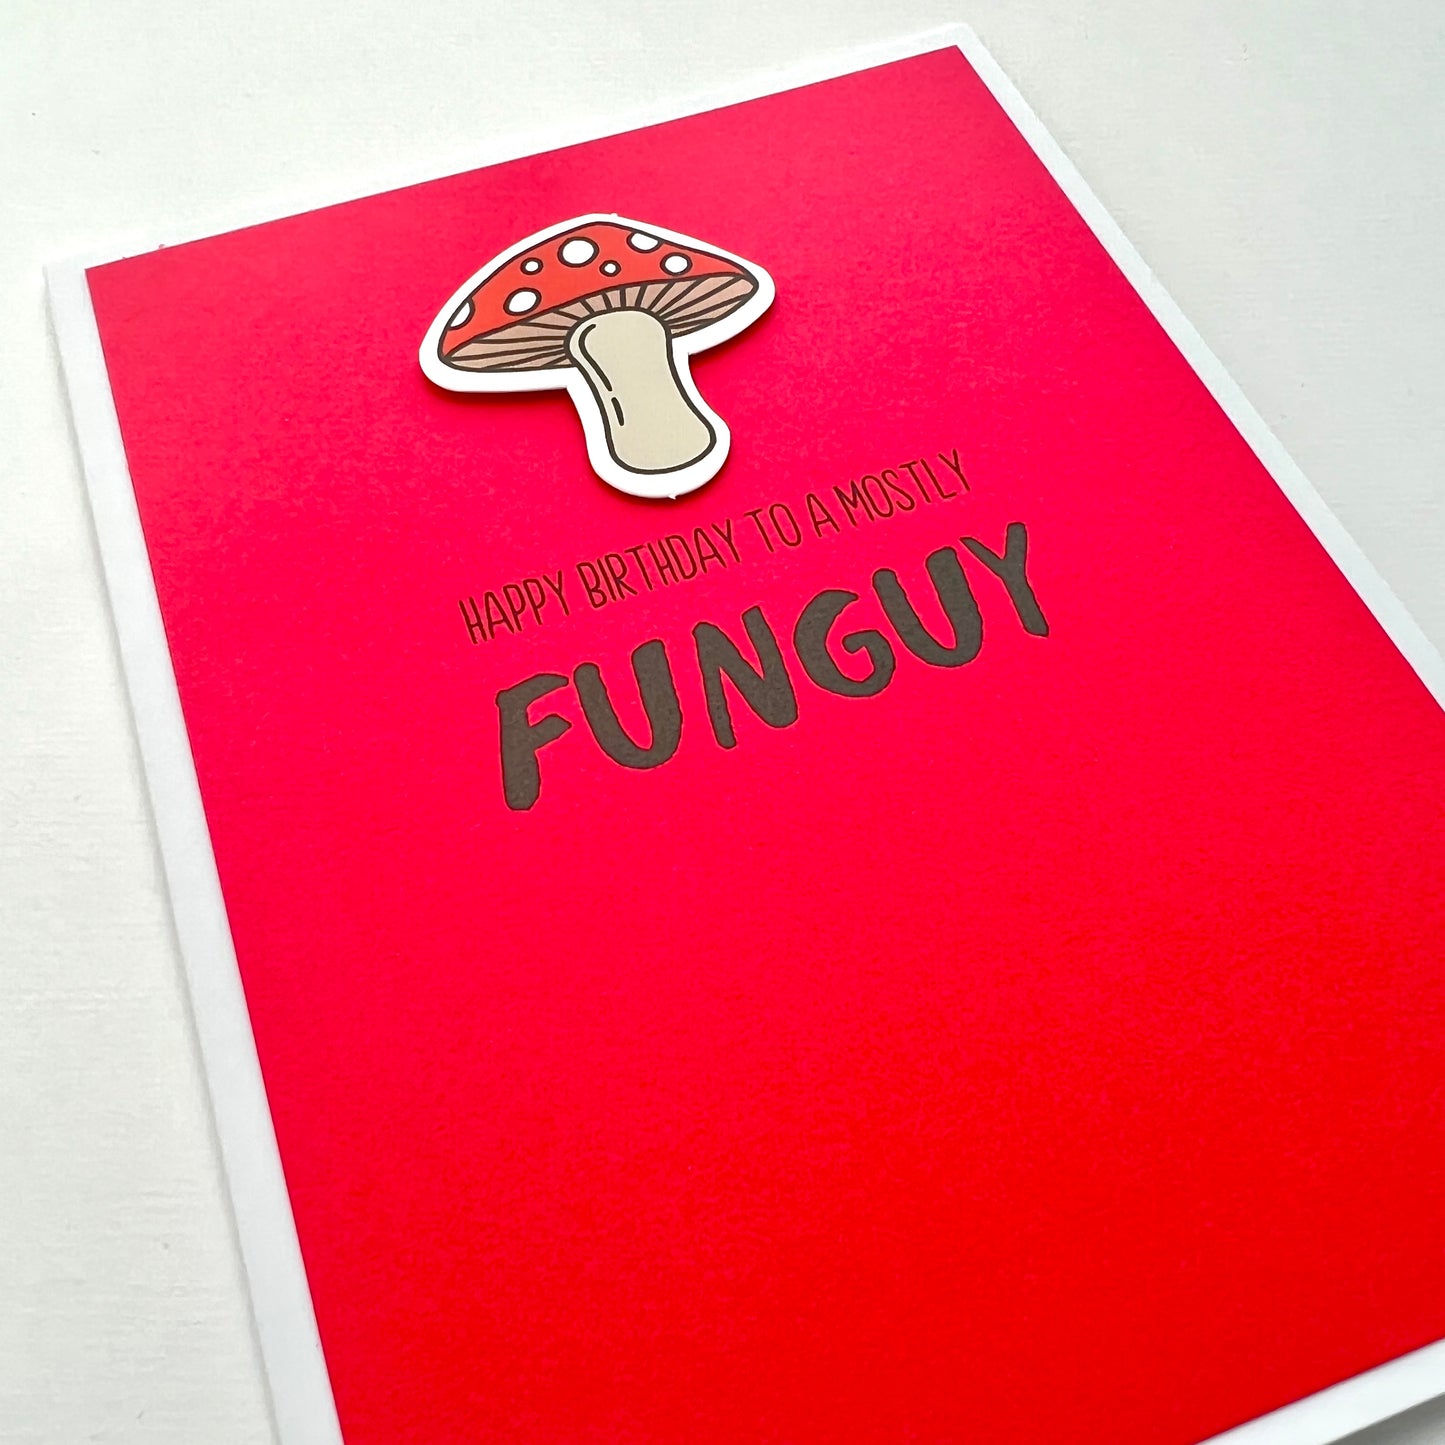 Mostly Funguy mushroom card